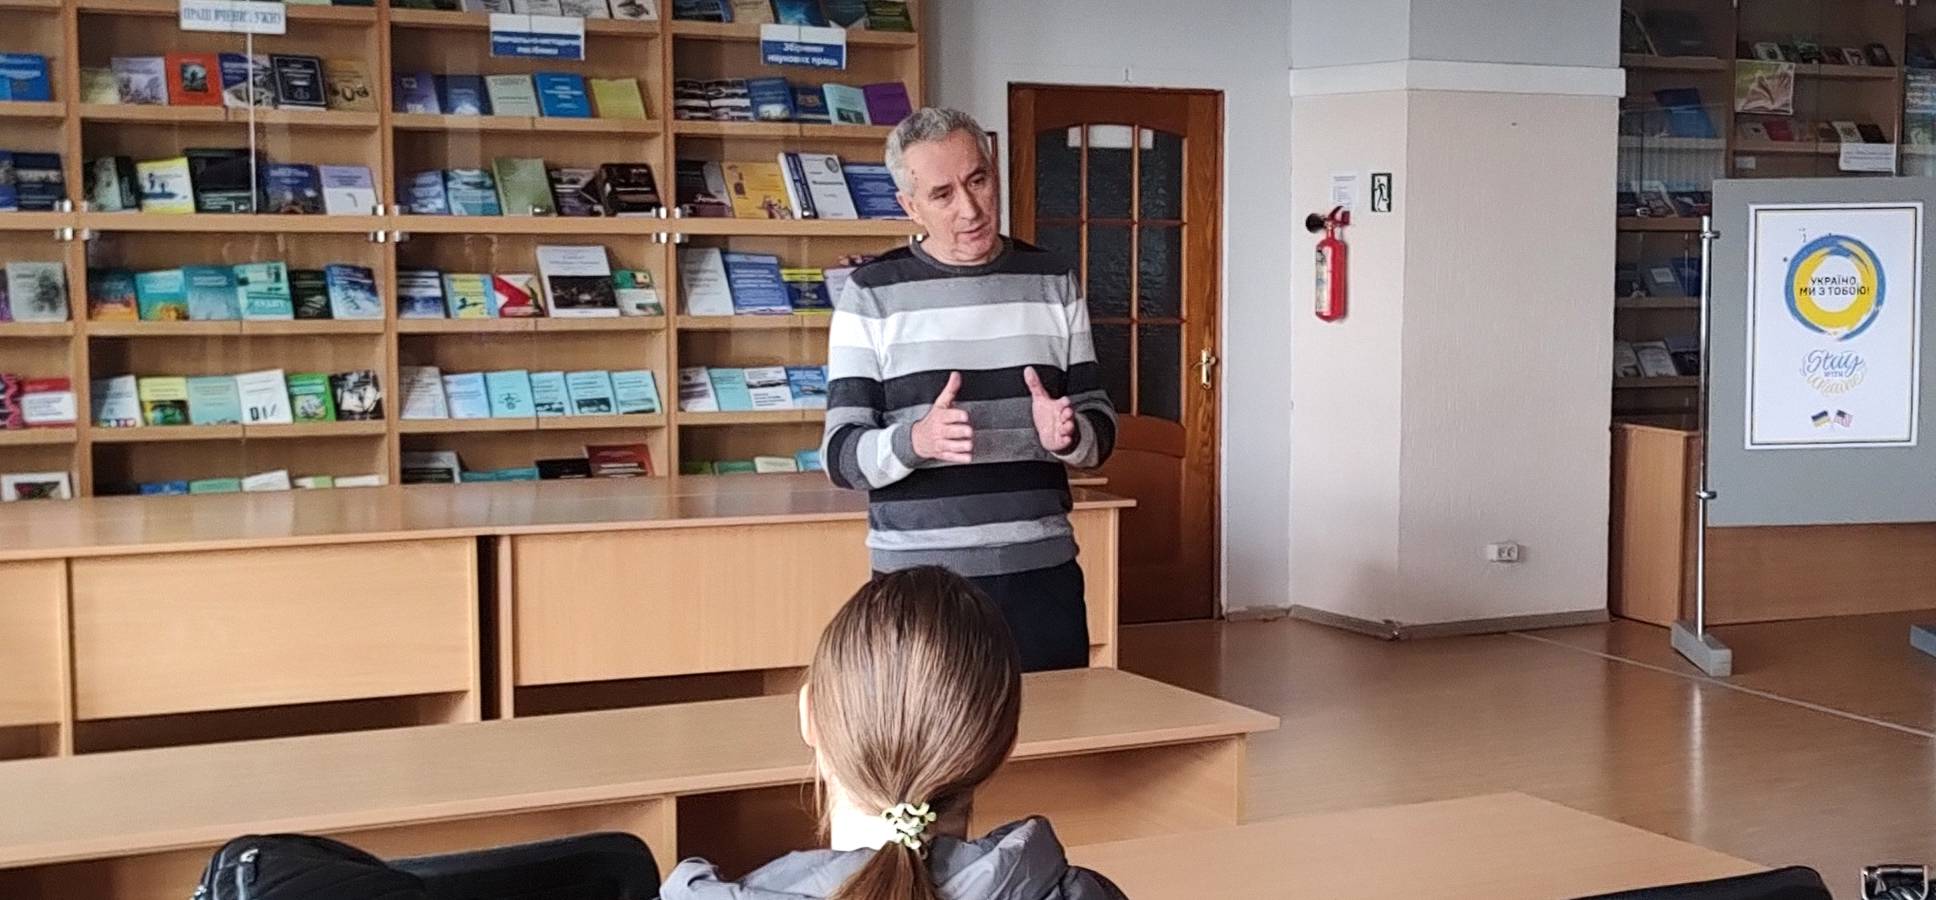 Історик та археолог Йосип Кобаль прочитав лекцію про минуле Ужгорода в Науковій бібліотеці УжНУ